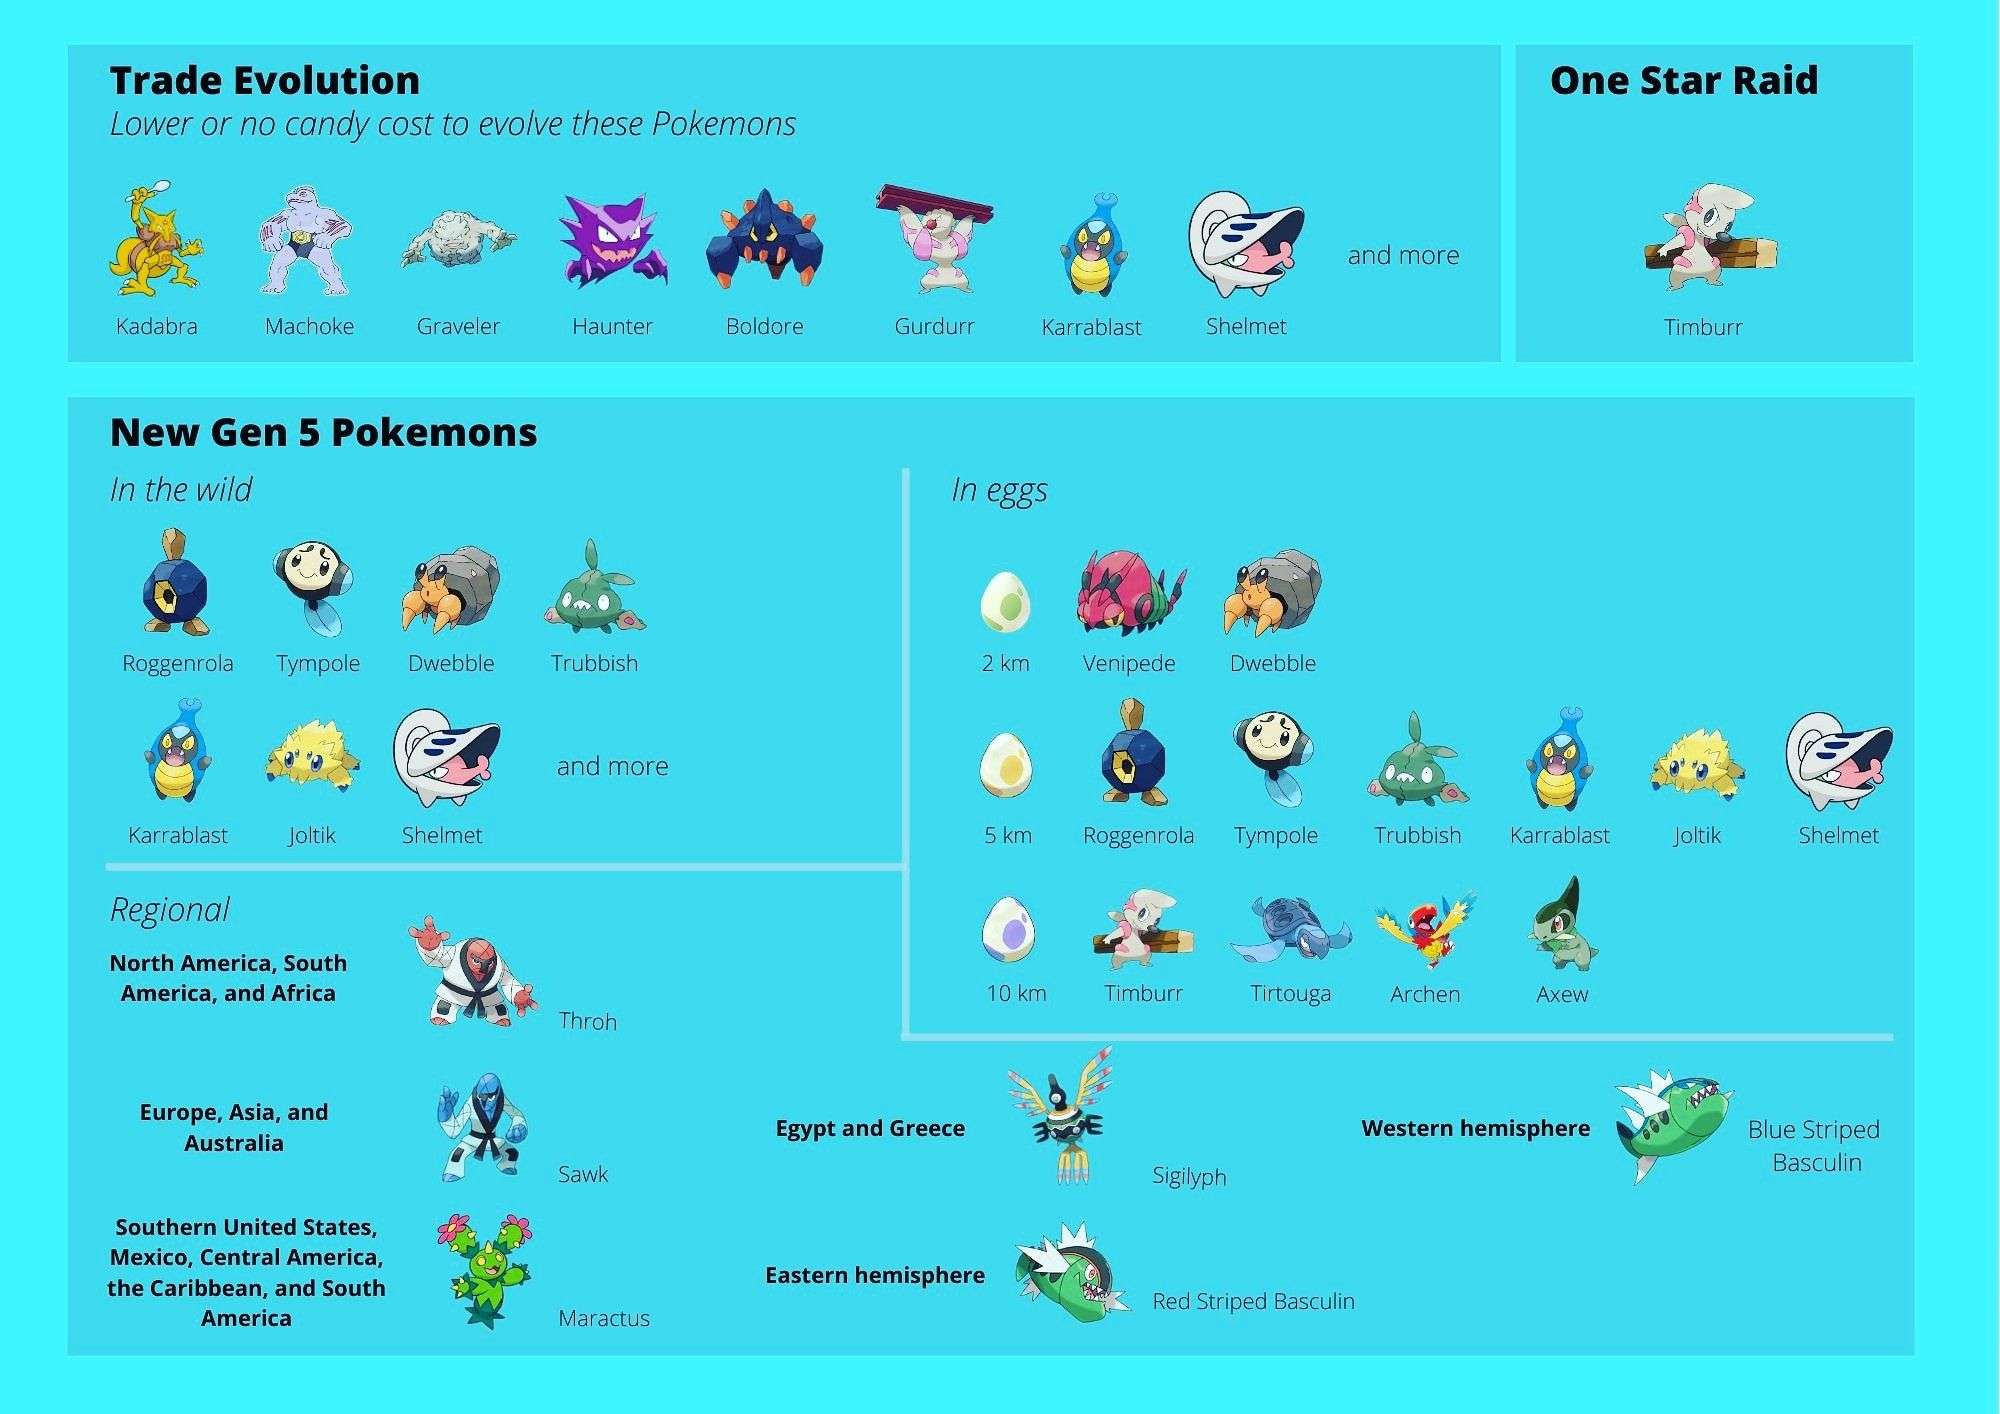 Pokemon Go Trade Evolution And New Gen 5 Pokemons in 2020